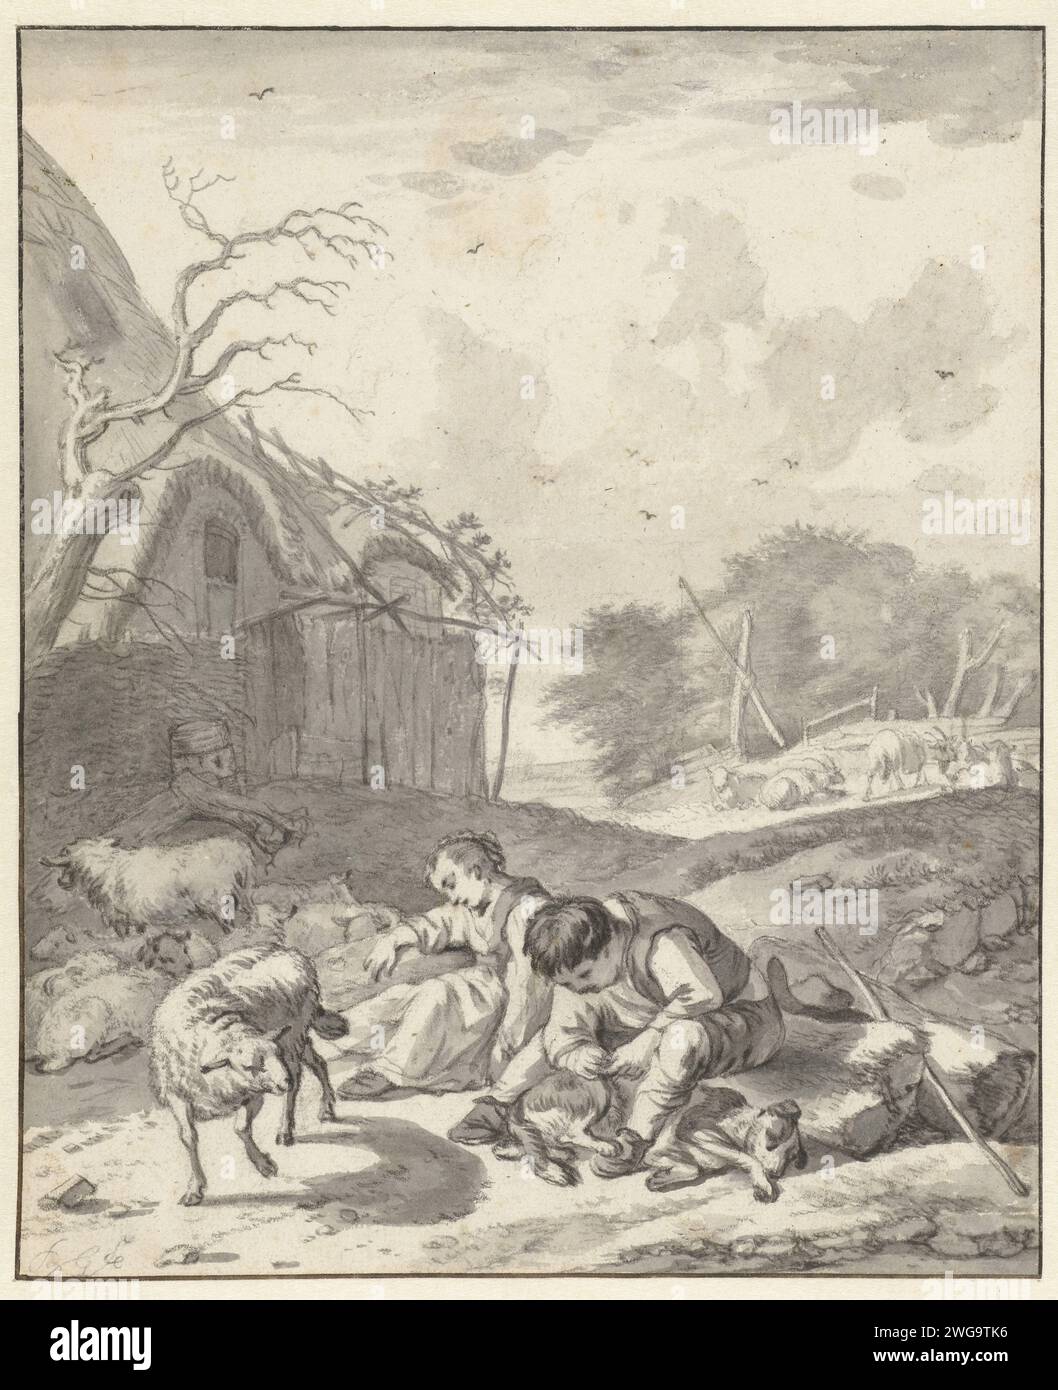 Berger et un berger, Barent Gael, 1640 - 1673 papier à dessin. craie. brosse à crayons Banque D'Images